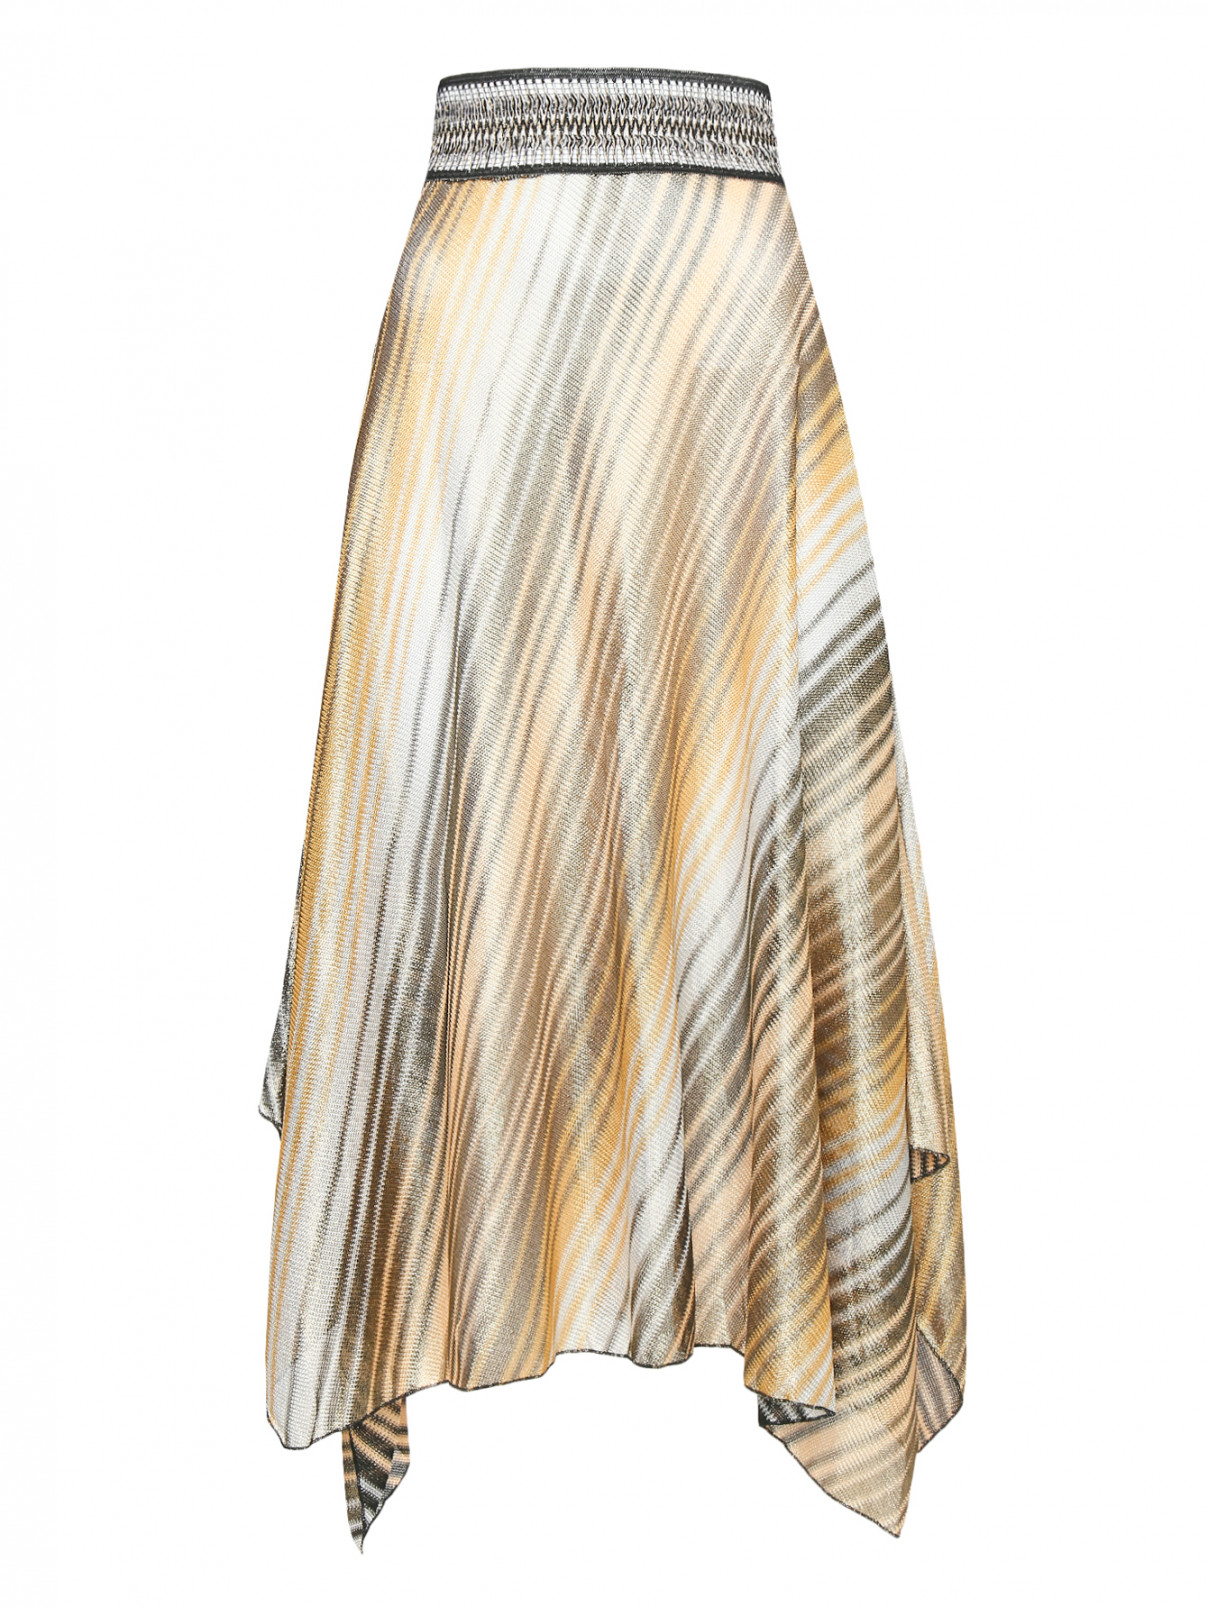 Пляжная юбка с узором полоска Chipie  –  Общий вид  – Цвет:  Узор